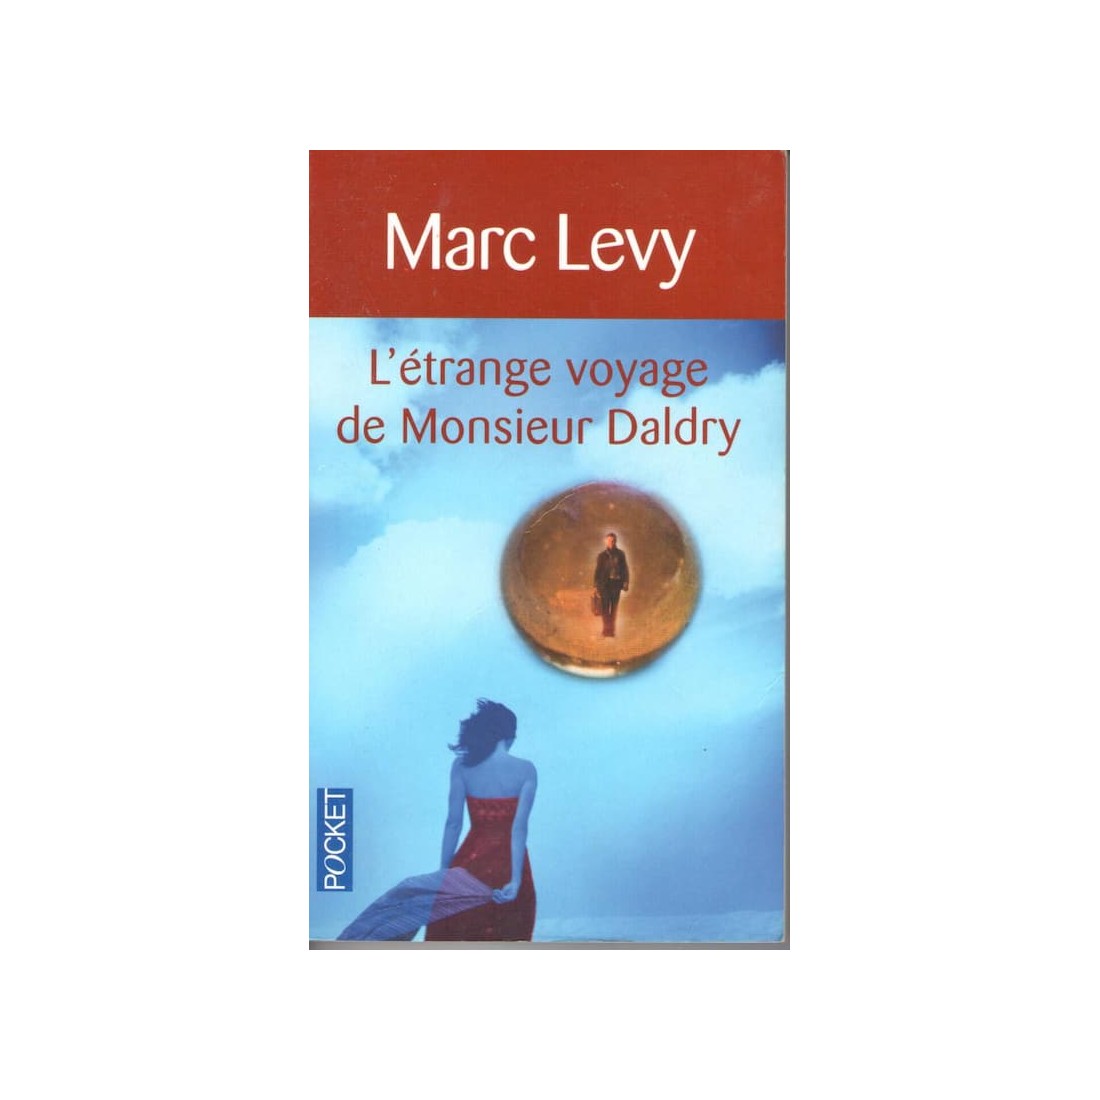 L'étrange voyage de Monsieur Daldry - Roman de Marc Levy - Ocazlivres.com